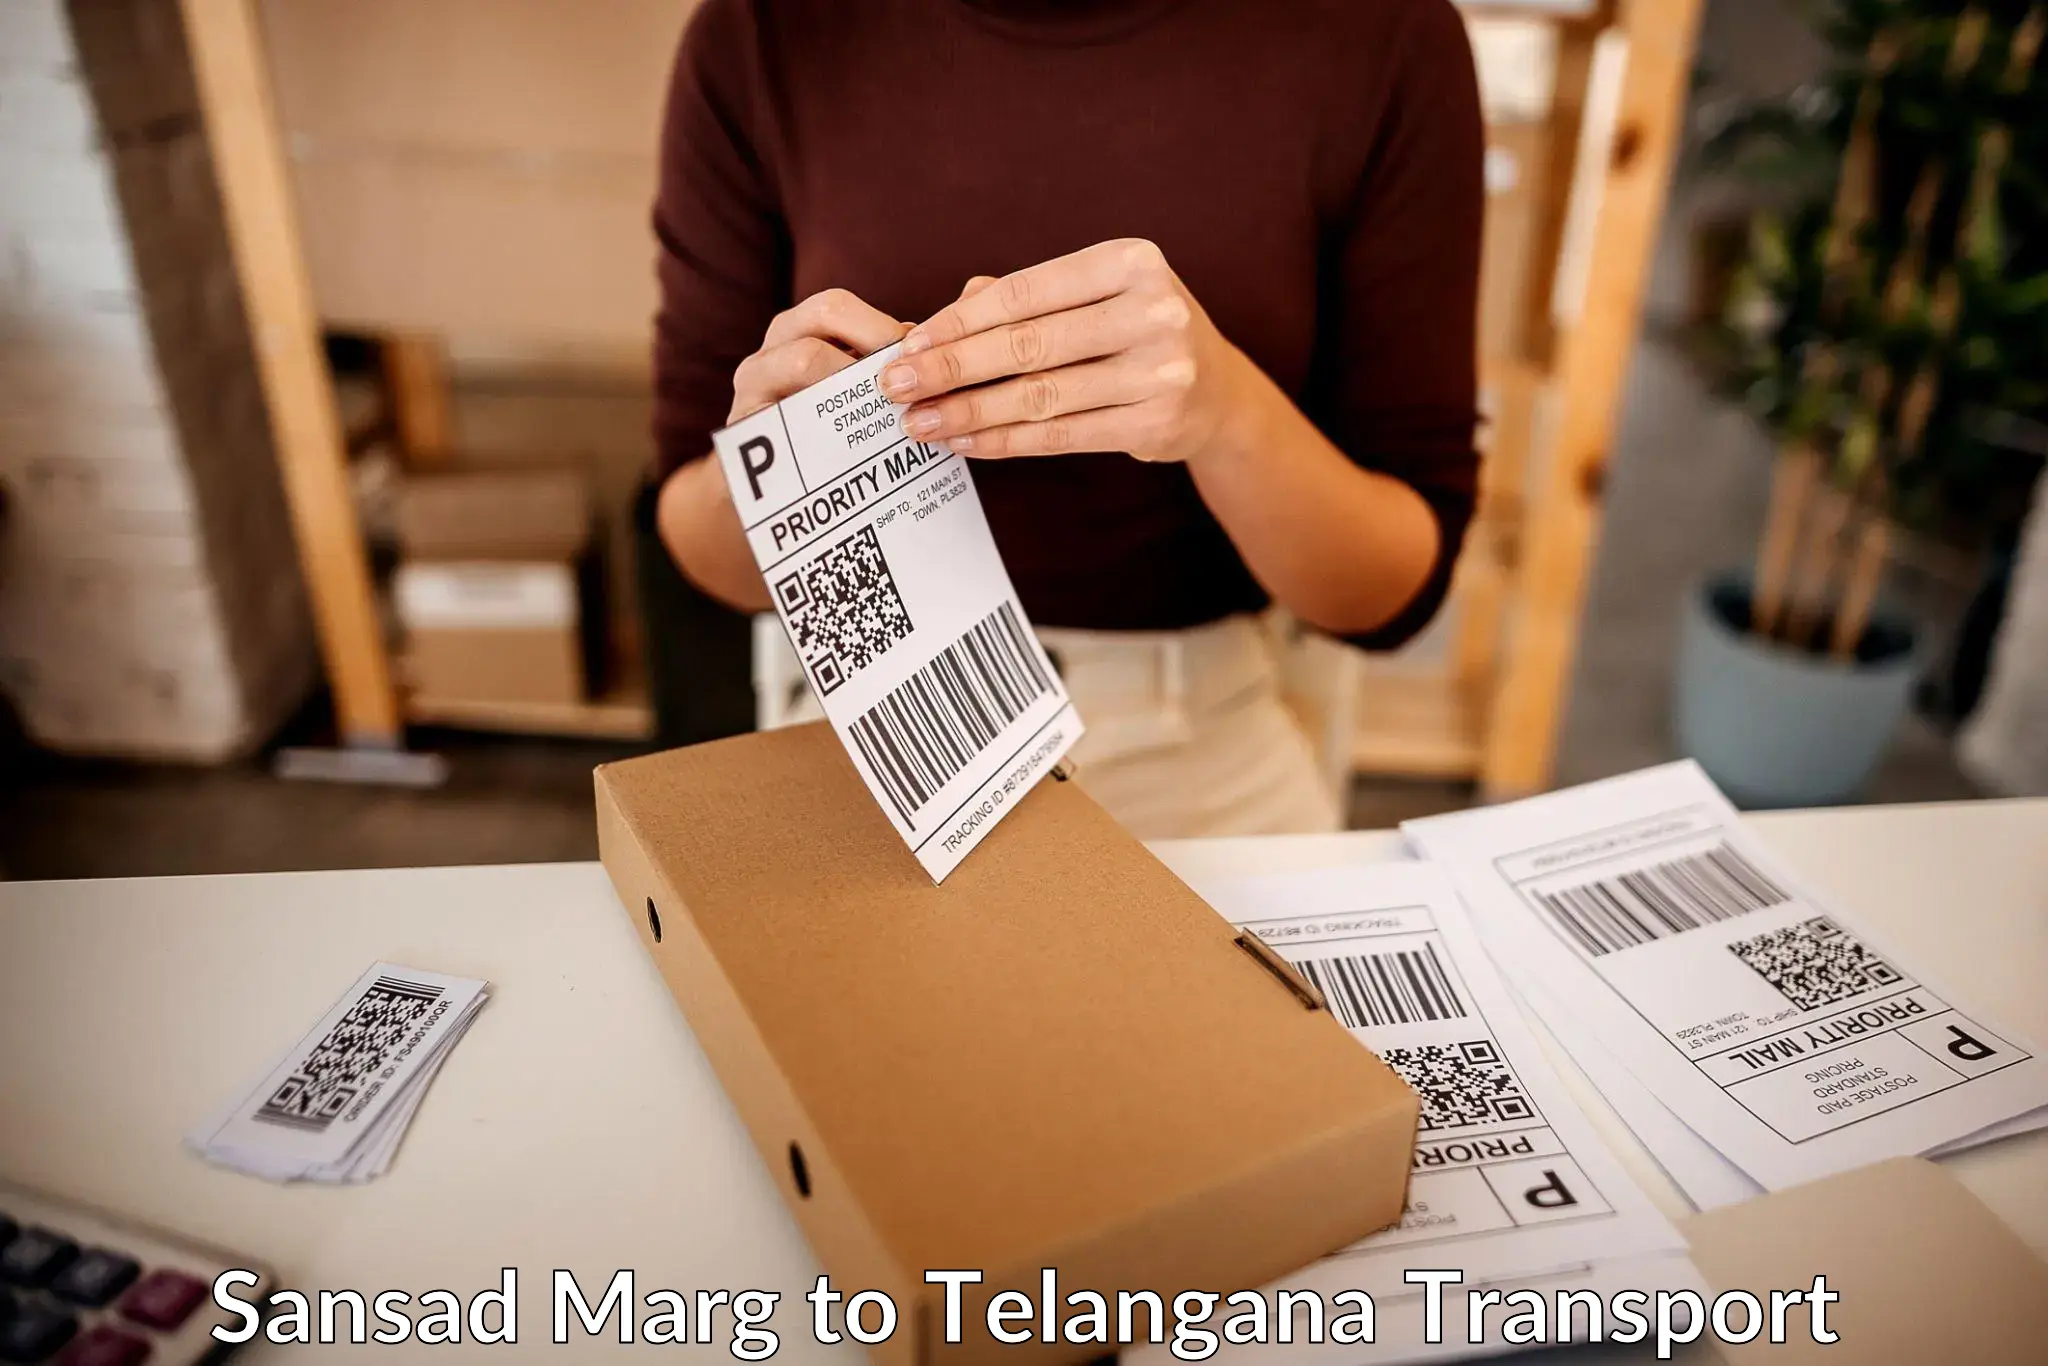 Goods delivery service Sansad Marg to Karimnagar